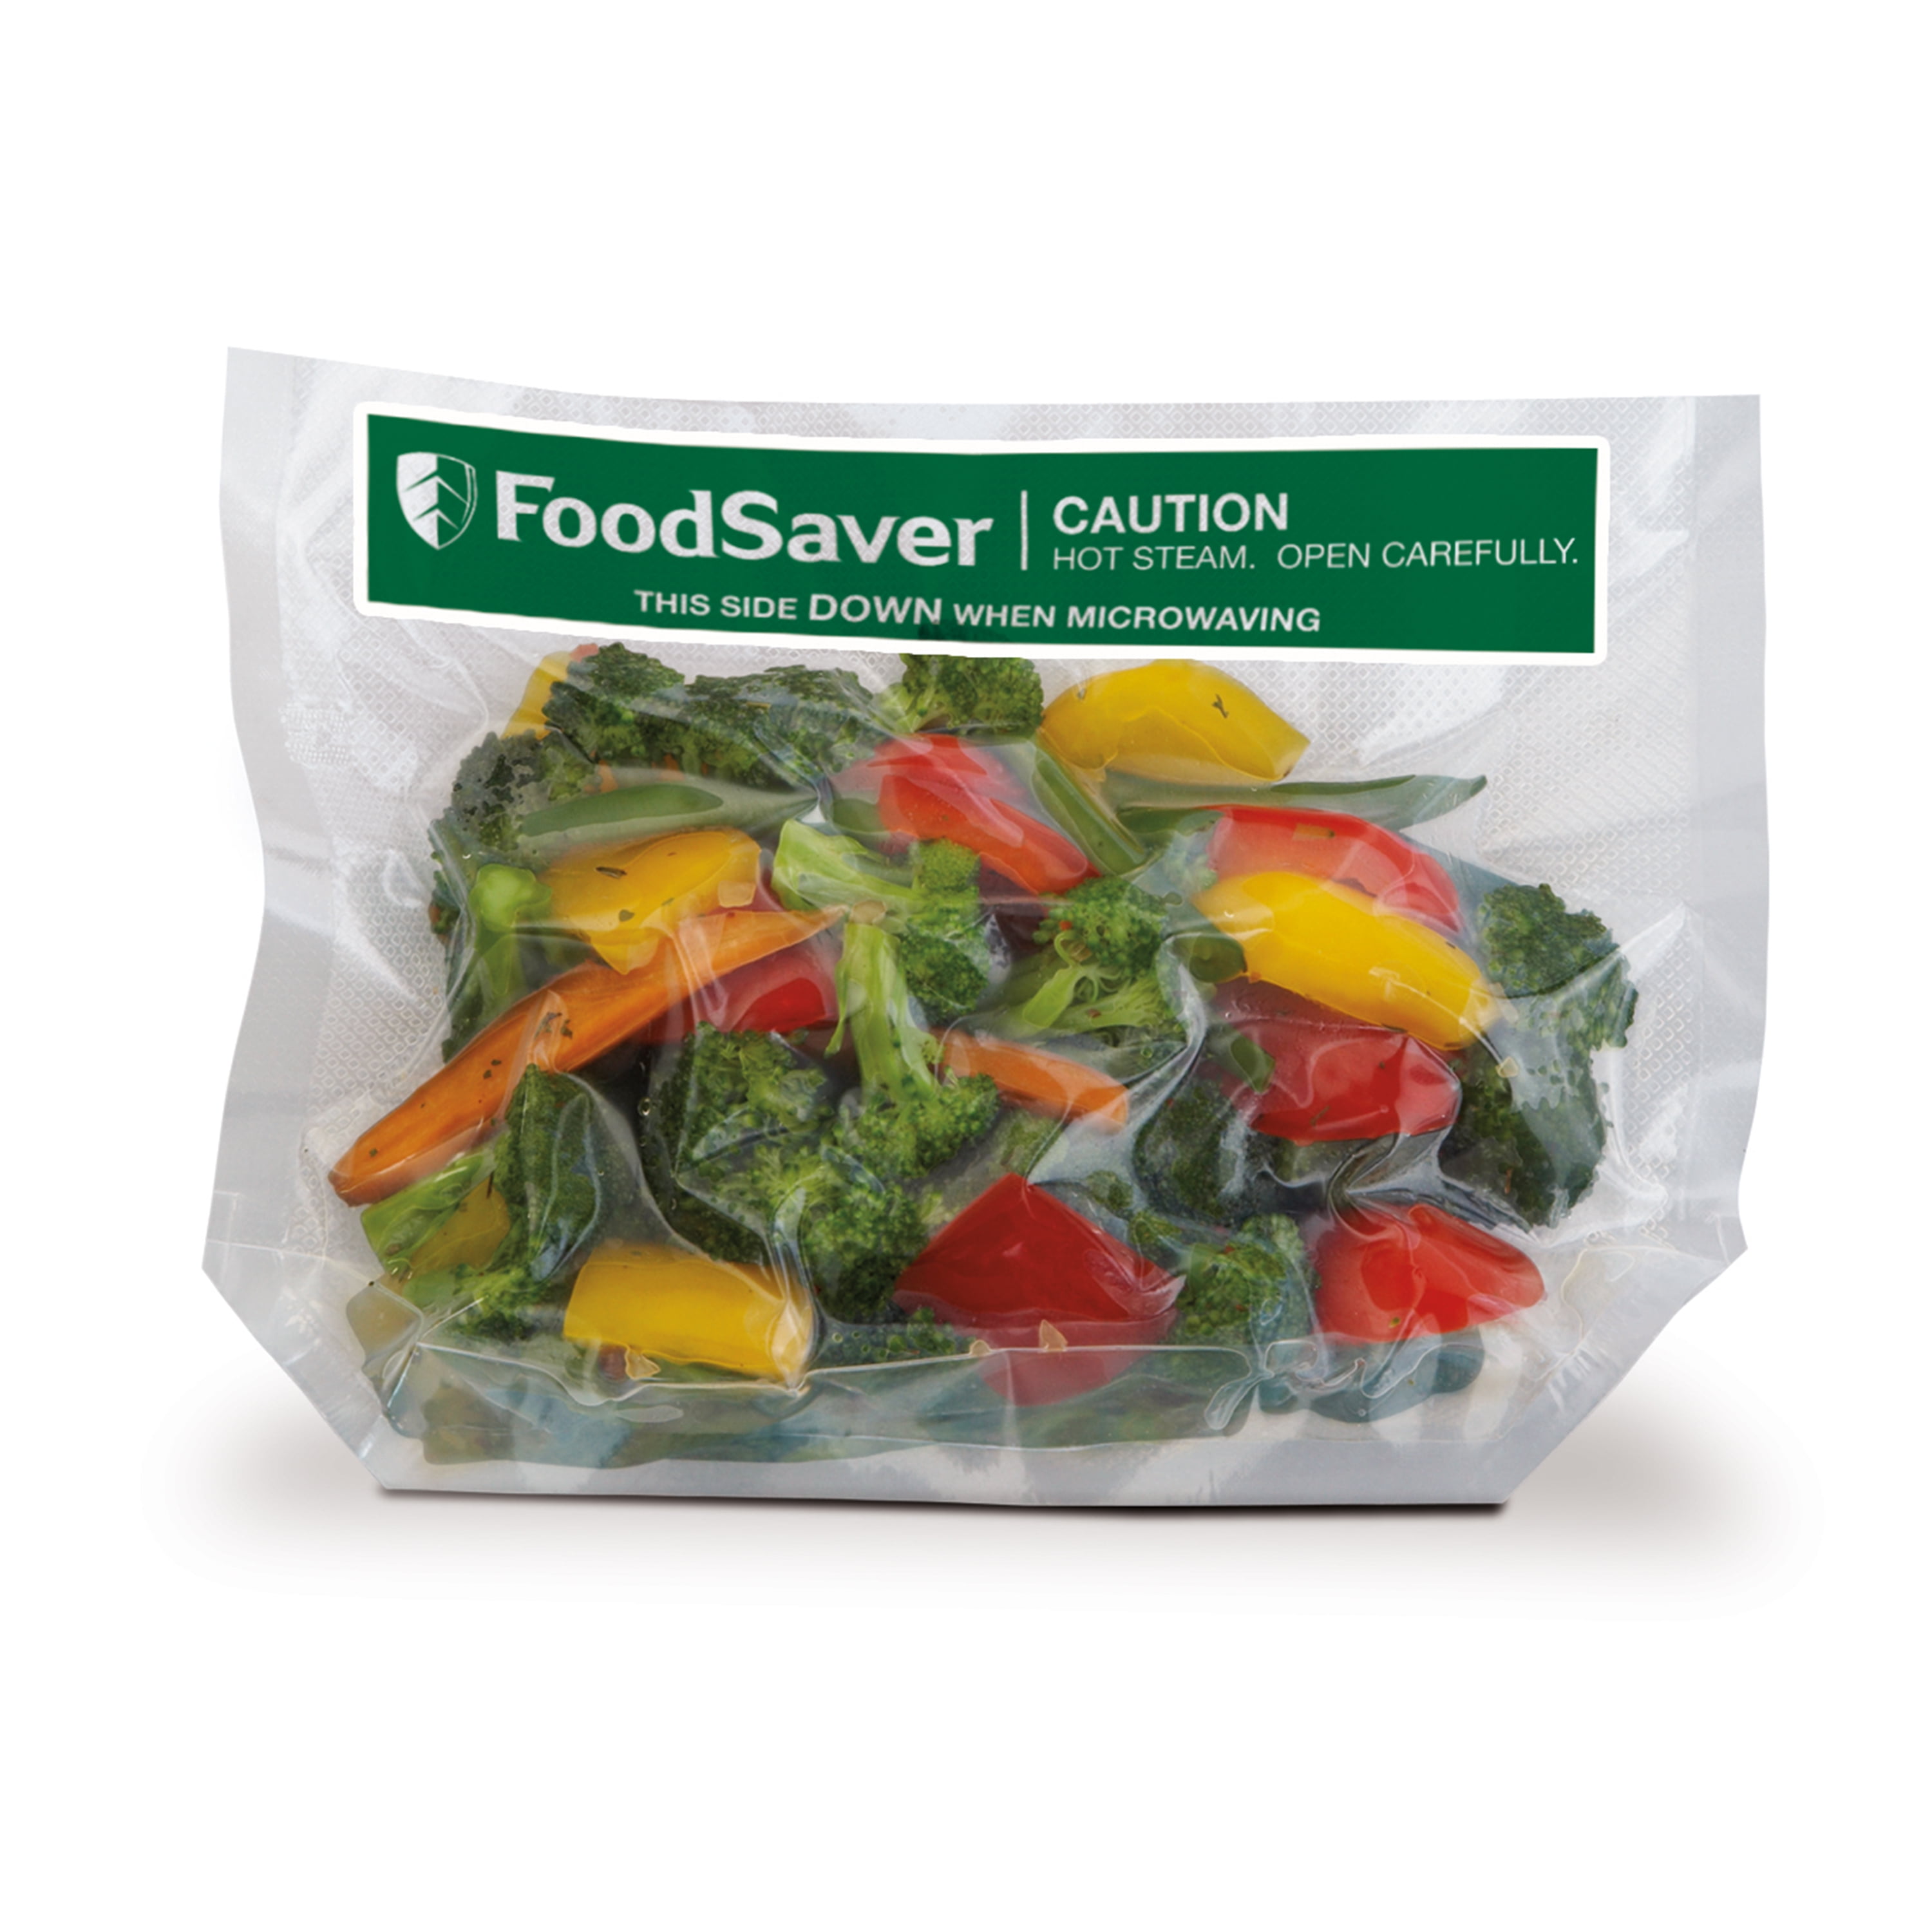 Очищенные овощи хранят. Овощи в вакуумной упаковке. Пакеты для вакуумной упаковки овощей. Замороженные овощи в вакуумной упаковке. Нарезанные овощи в упаковке.